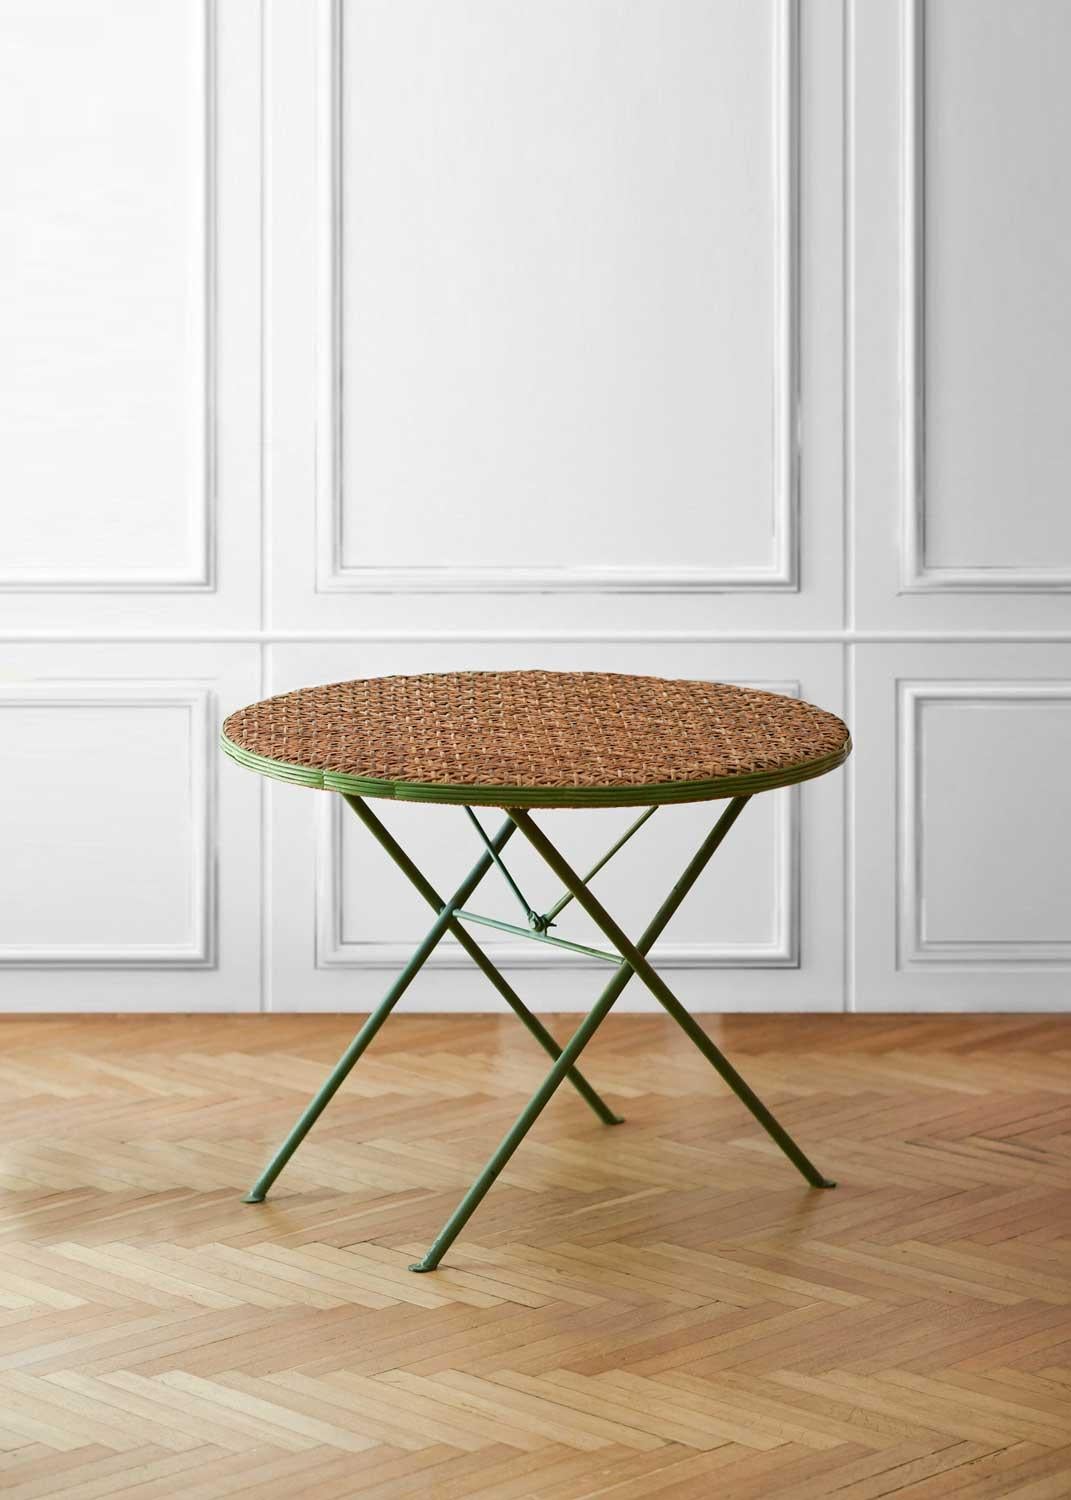 “Un Jardin en Plus” Paris set – table wit 4 folding chairs 
Table dimensions 91w x 70h x 91p cm
Single Chairs dimensions 42w x 88h x 45d cm
Materials: wicker and metal